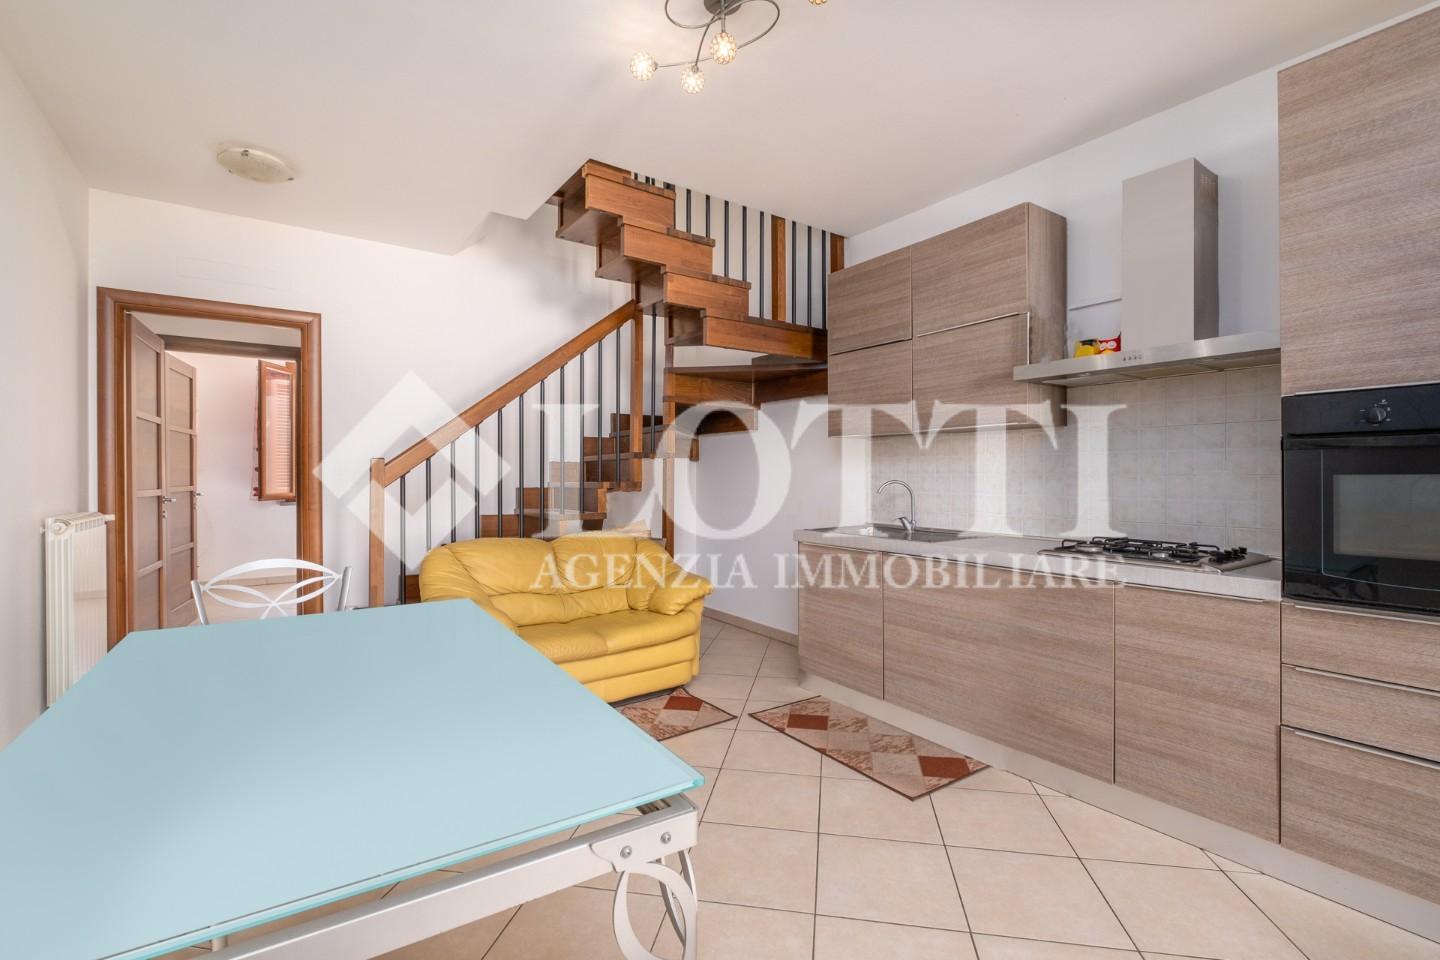 Apartment for rent in San Giovanni Alla Vena, Vicopisano (PI)